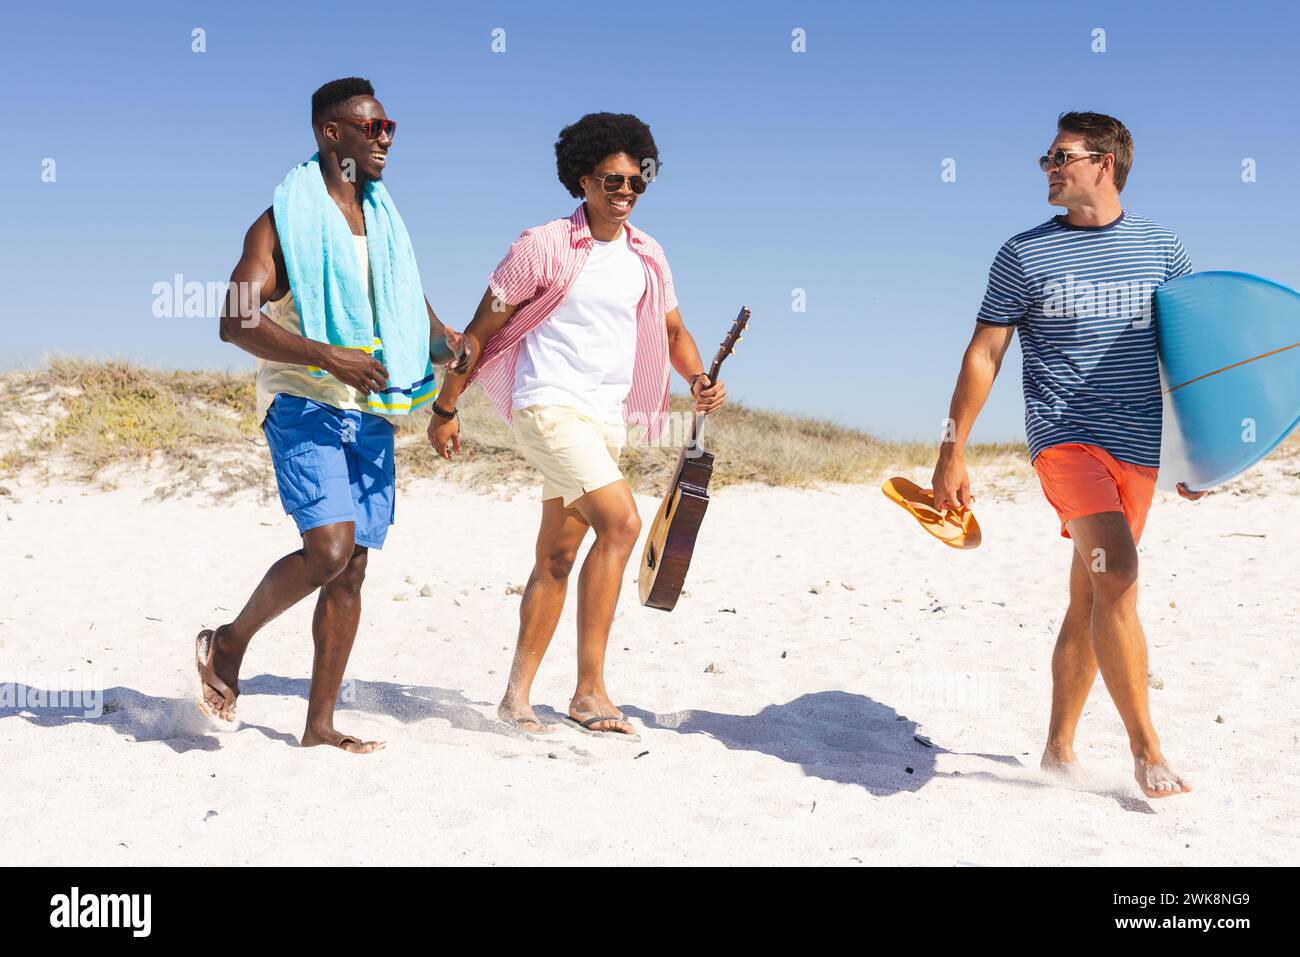 Divers amis profitent d'une journée ensoleillée à la plage Banque D'Images